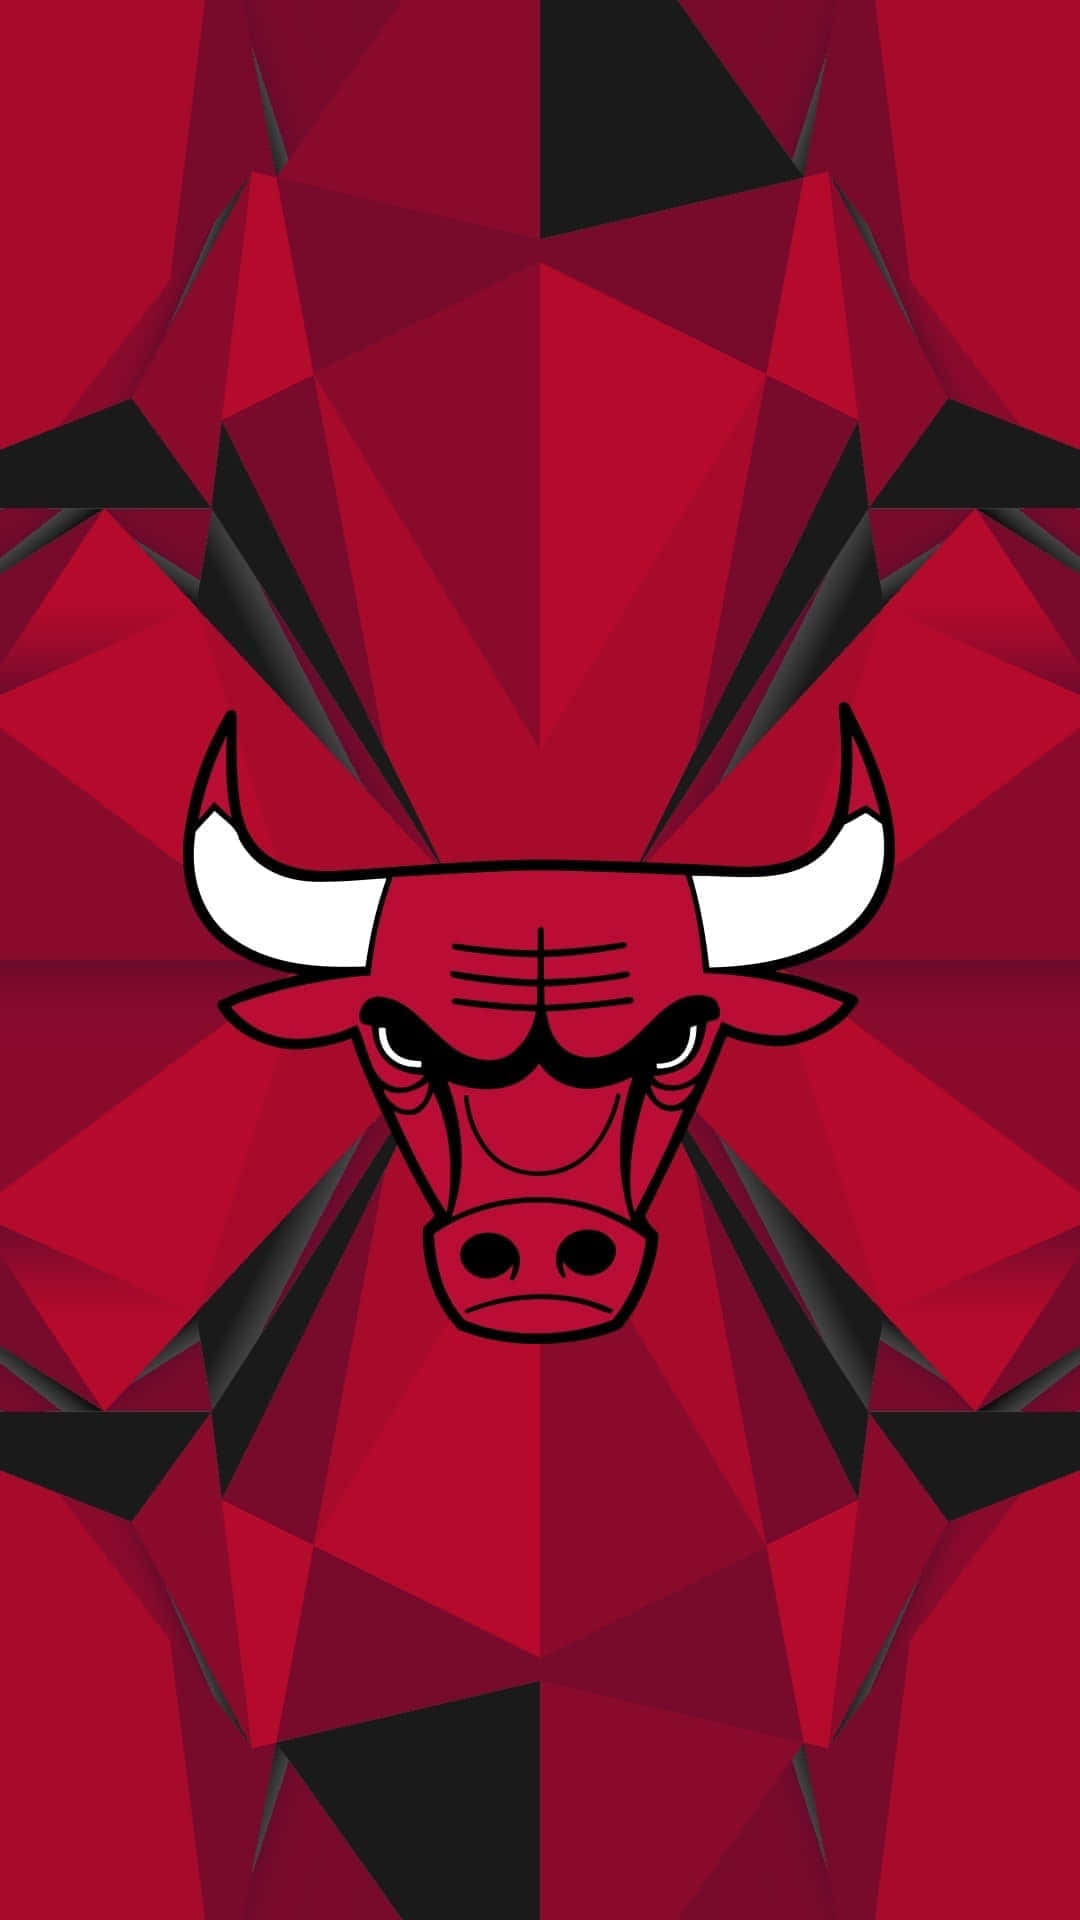 Sienteel Orgullo De La Comunidad De Los Chicago Bulls. Fondo de pantalla